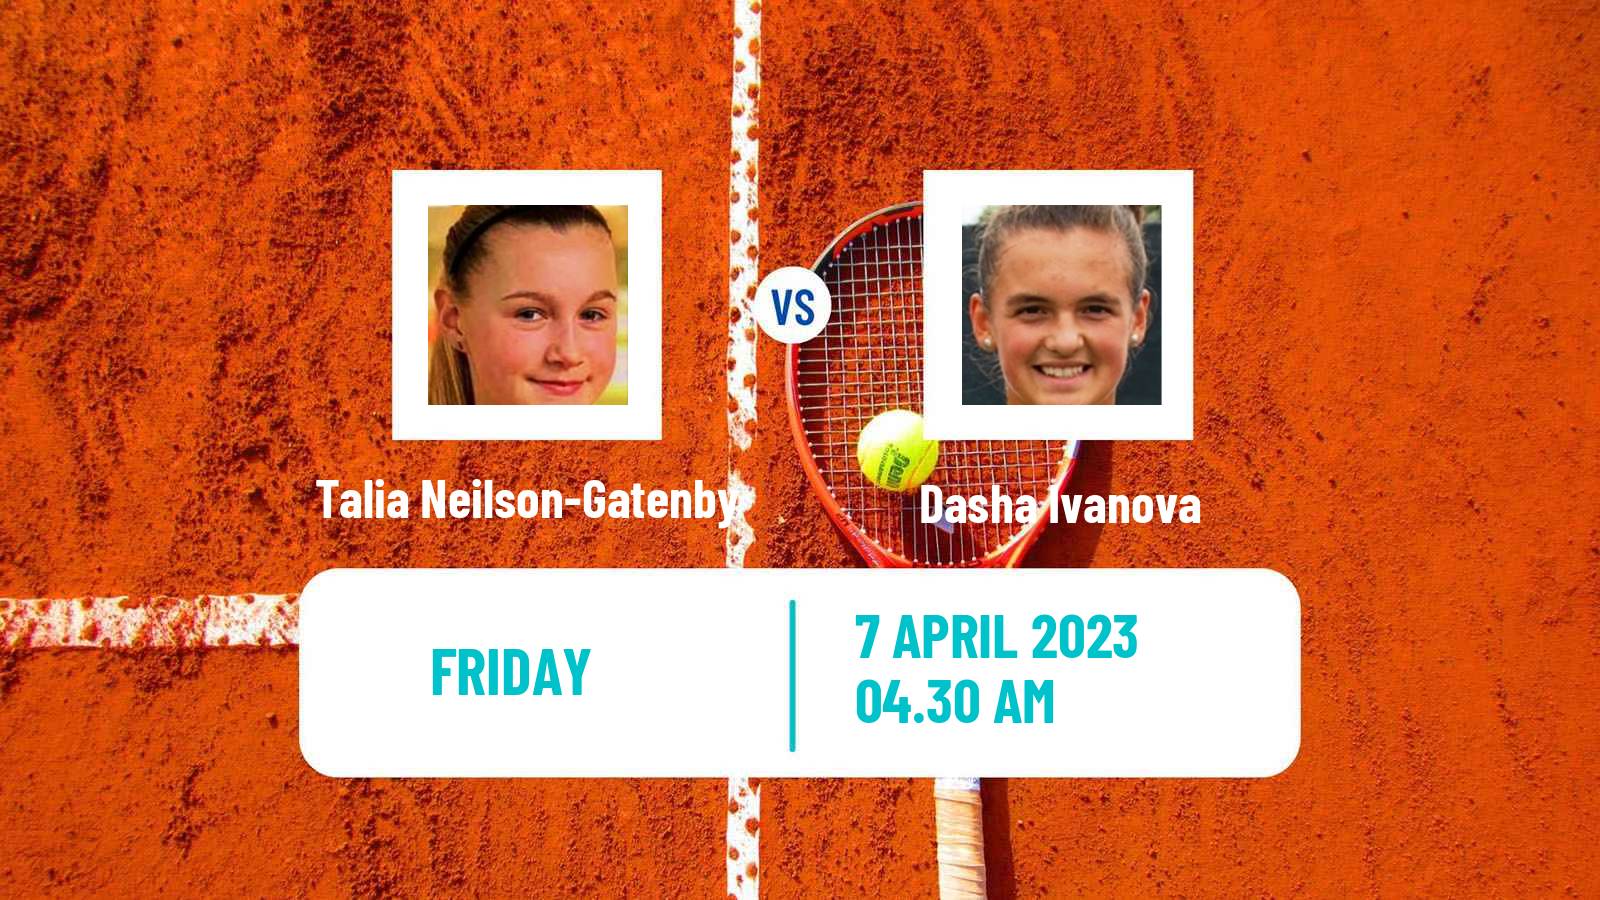 Tennis ITF Tournaments Talia Neilson-Gatenby - Dasha Ivanova